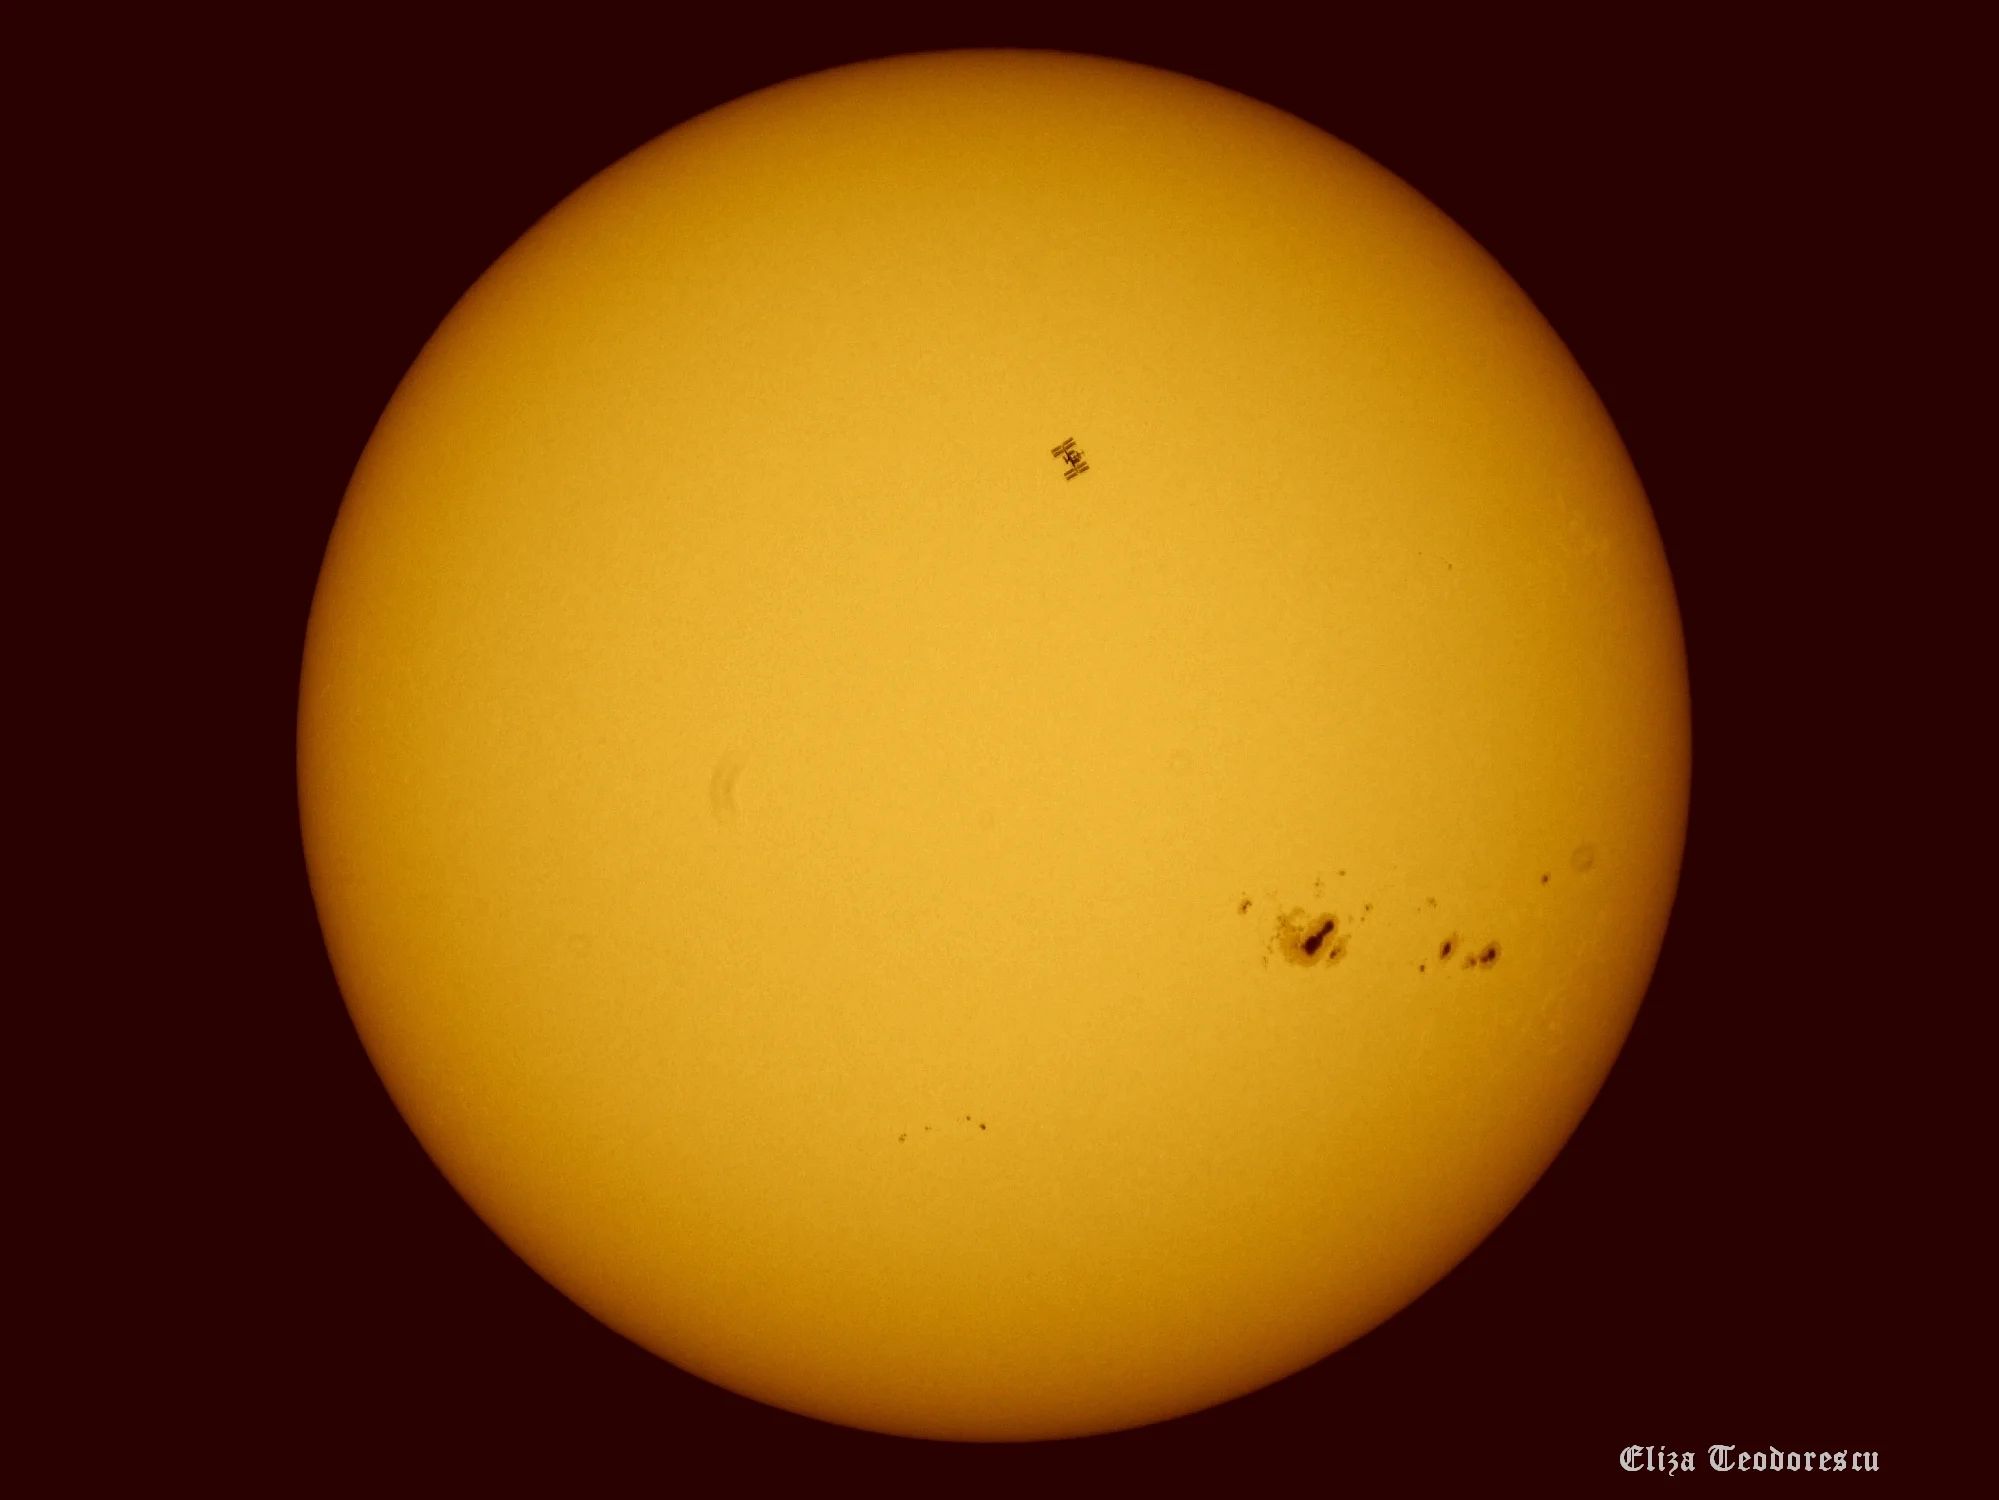 Zdjęcie Słońca. Widoczne są liczne plamy słoneczne oraz Międzynarodowa Stacja Kosmiczna na tle tarczy słonecznej